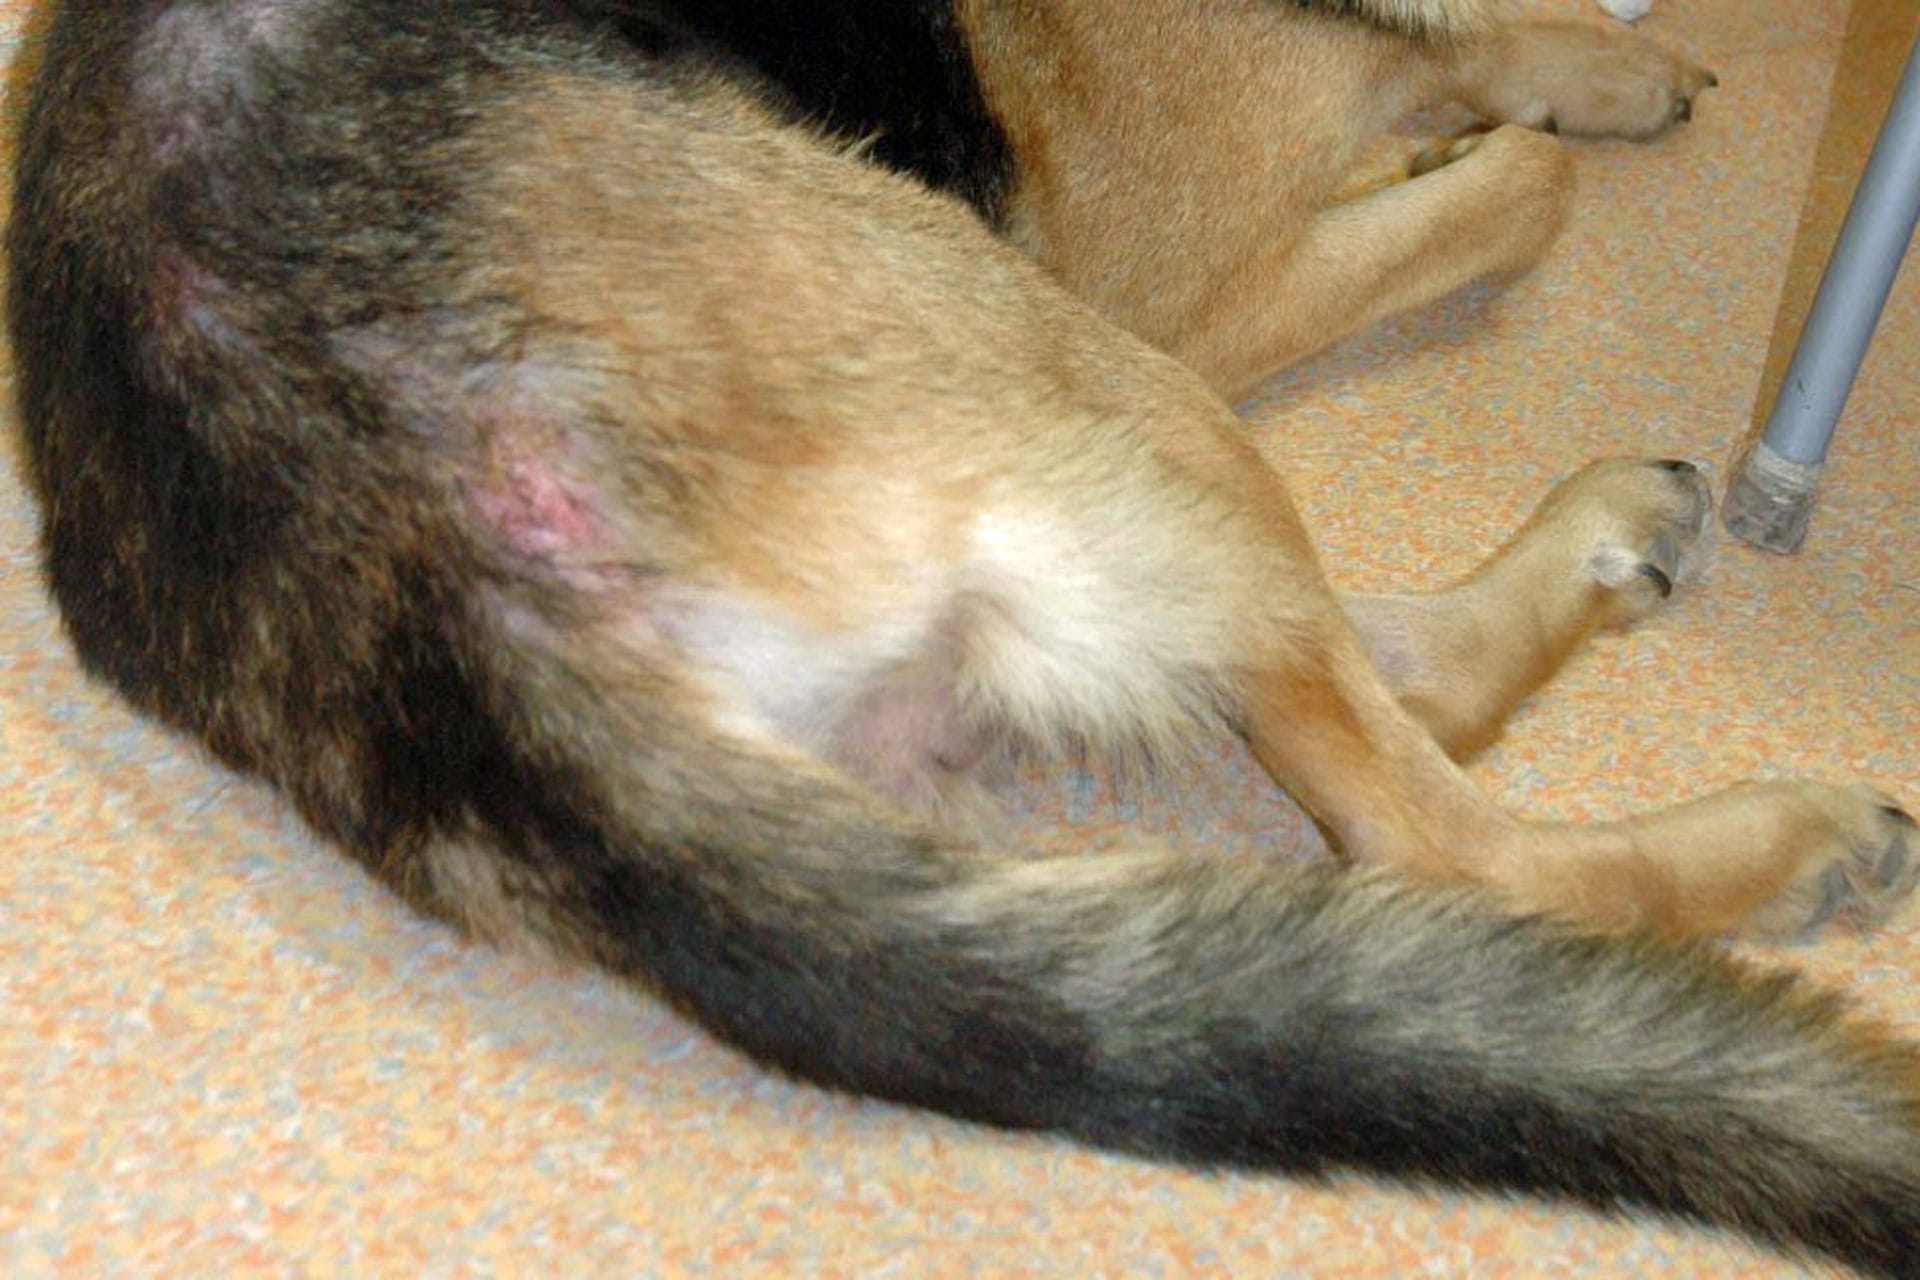 Hautrötung - Erythem und Haarausfall am Rücken eines Hundes. Flöhe sind oft die Ursache.